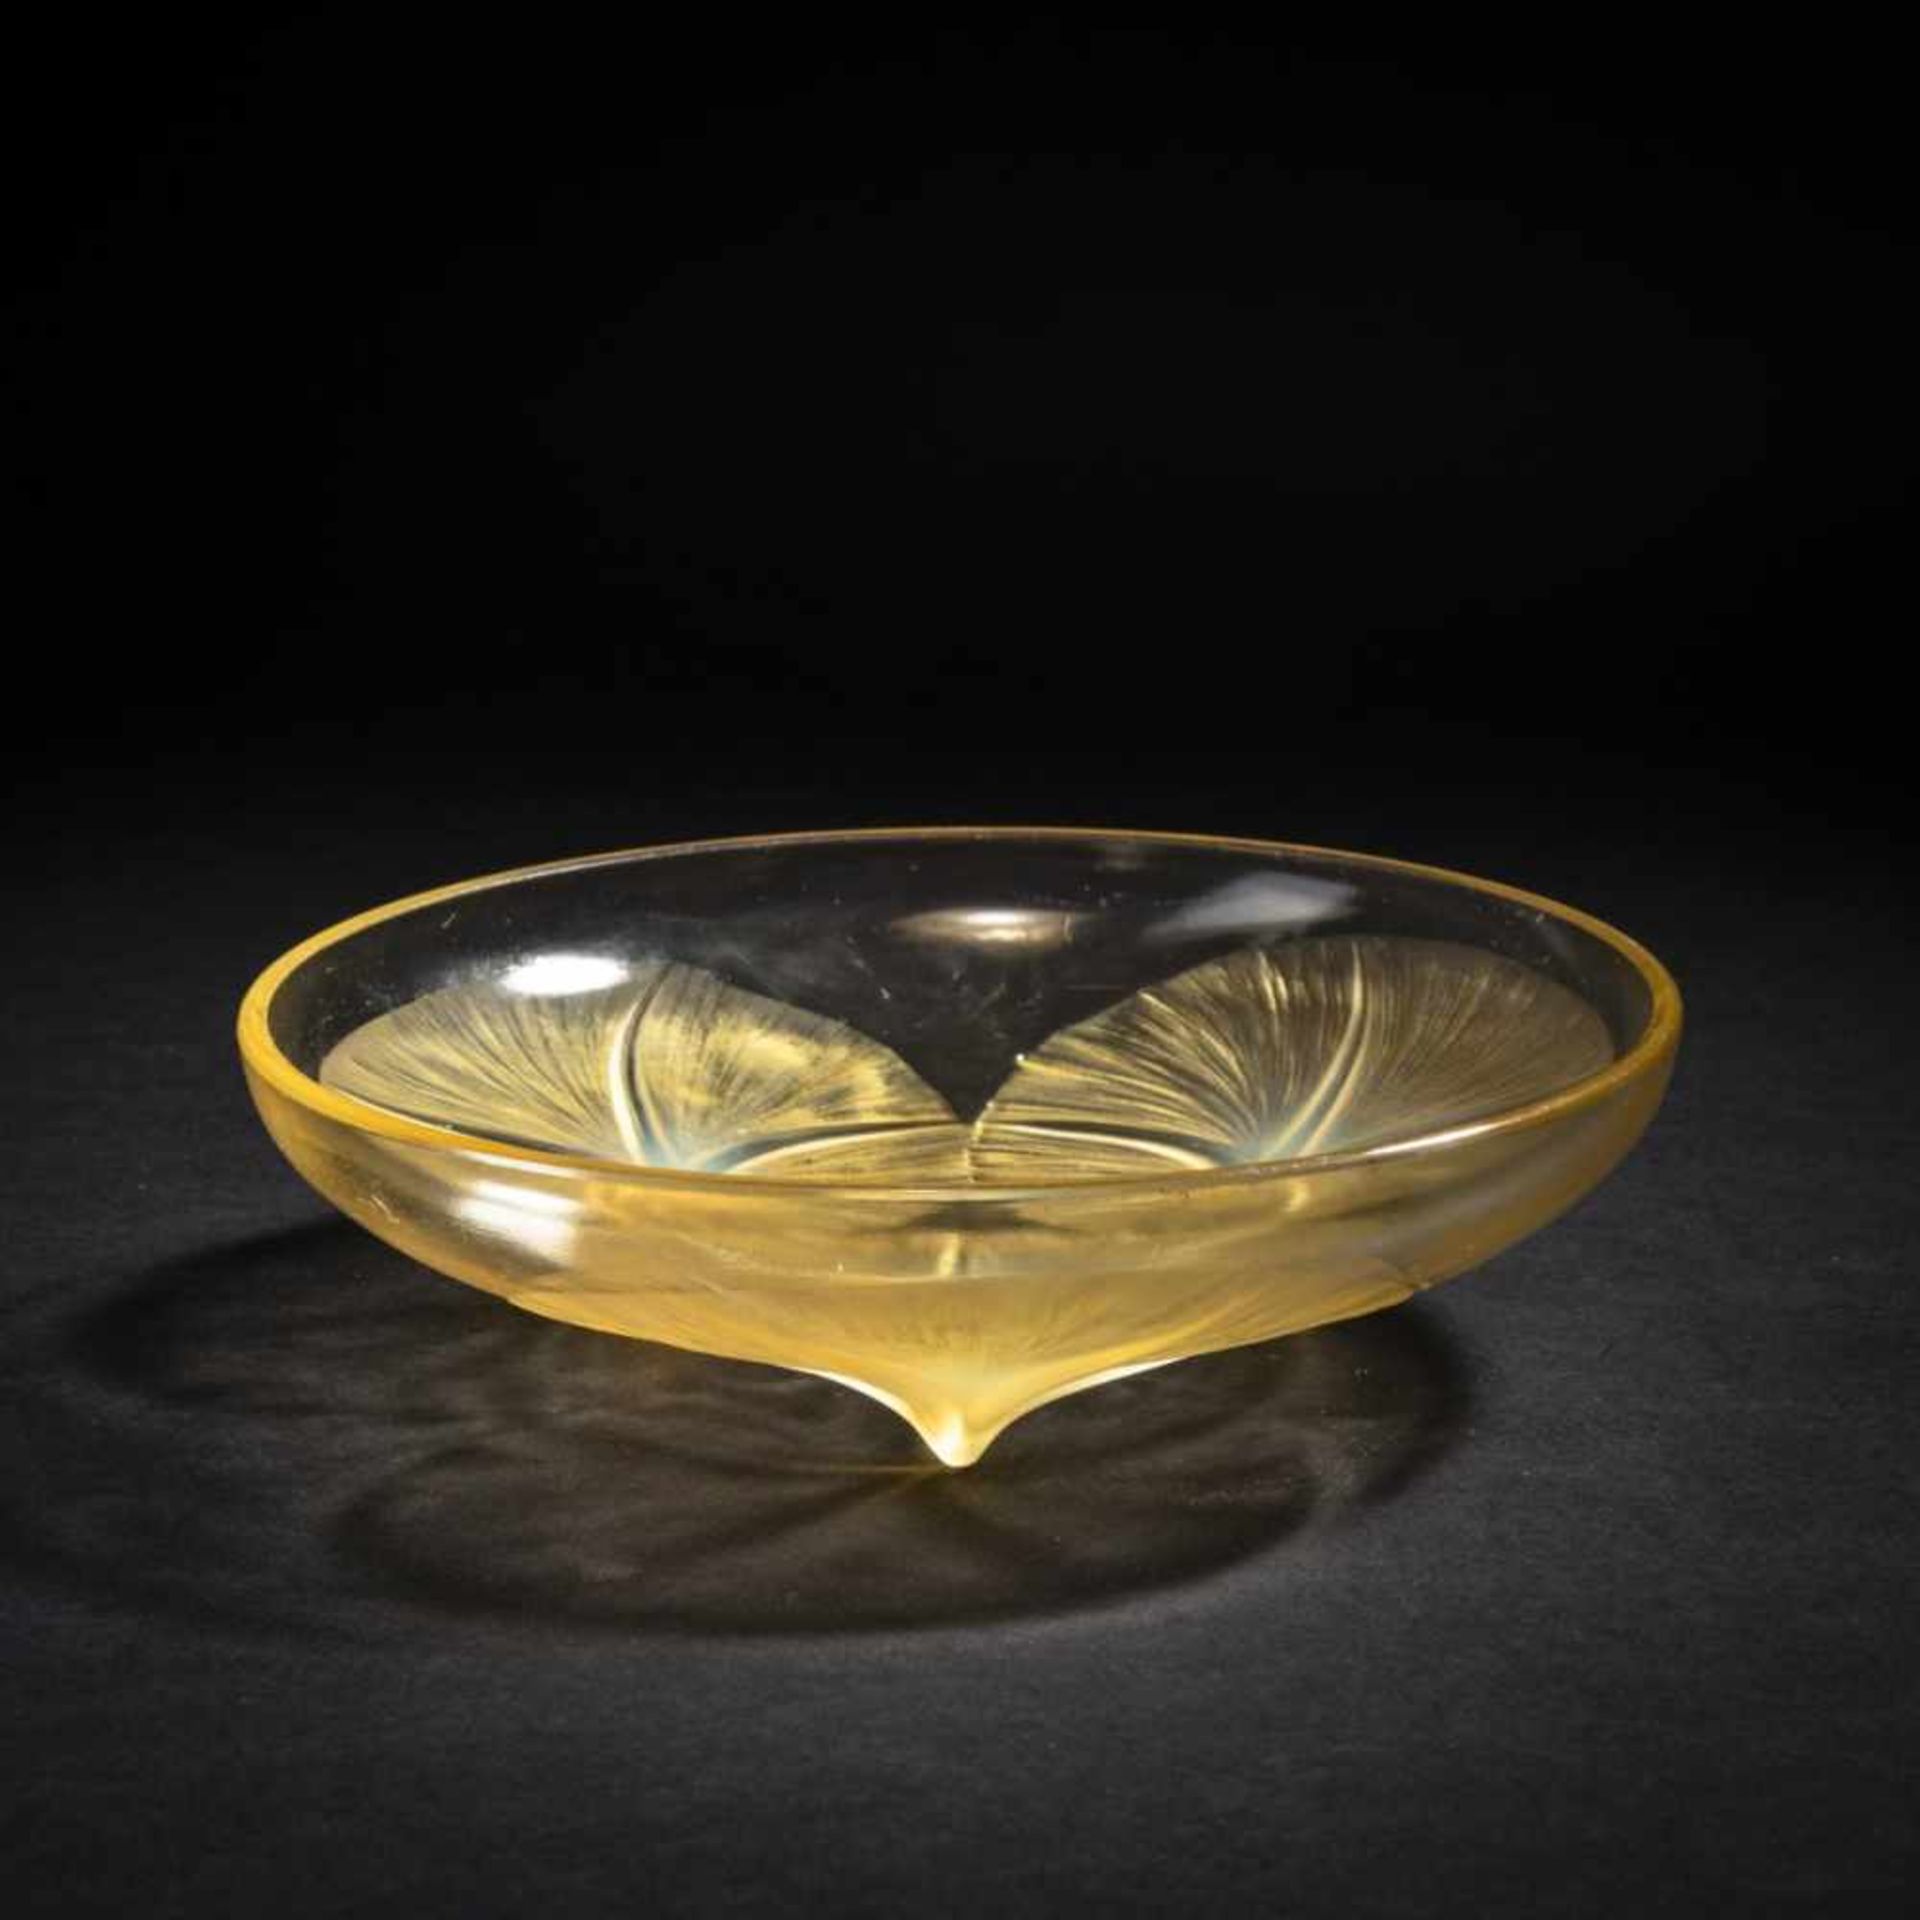 René Lalique, 'Volubilis' bowl, 1921'Volubilis' bowl, 1921Ø 21.5 cm. Yellow, moulded glass,